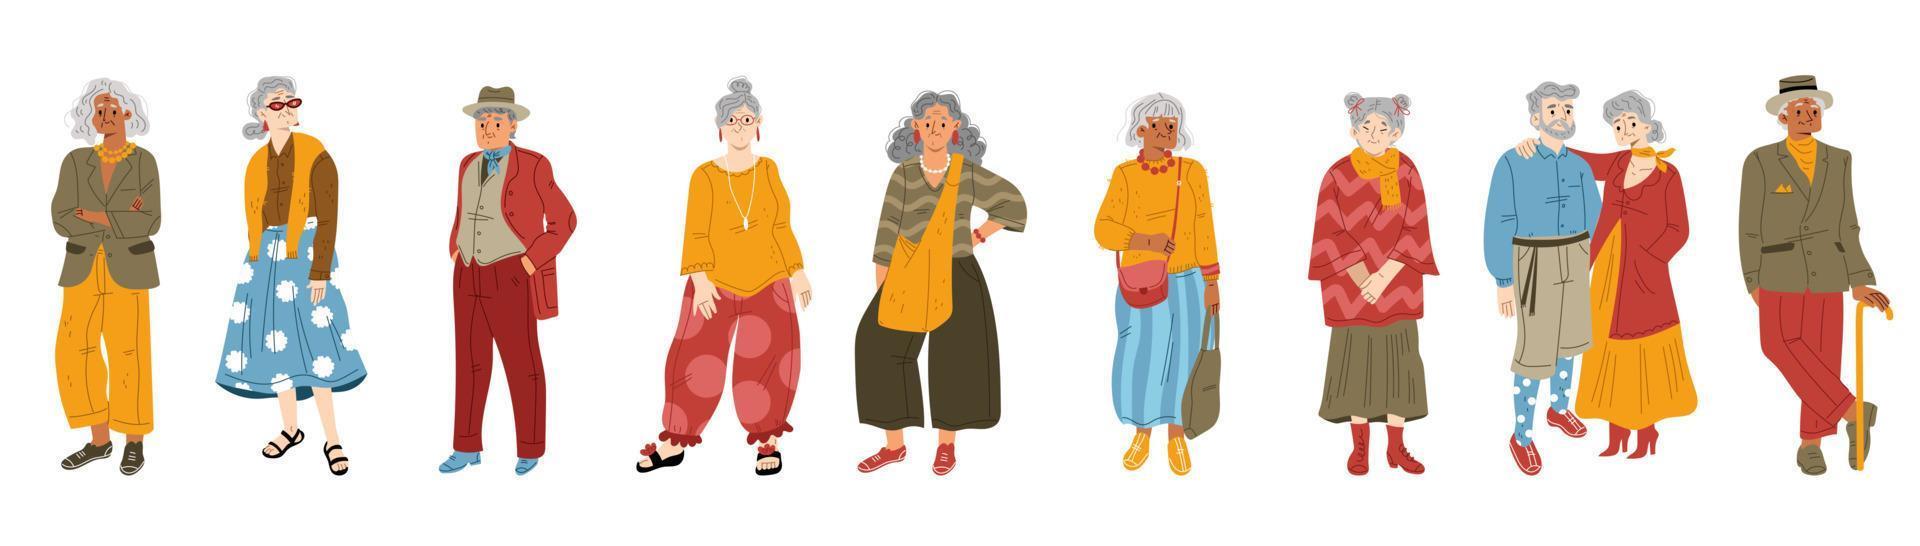 idosos modernos em roupas da moda vetor